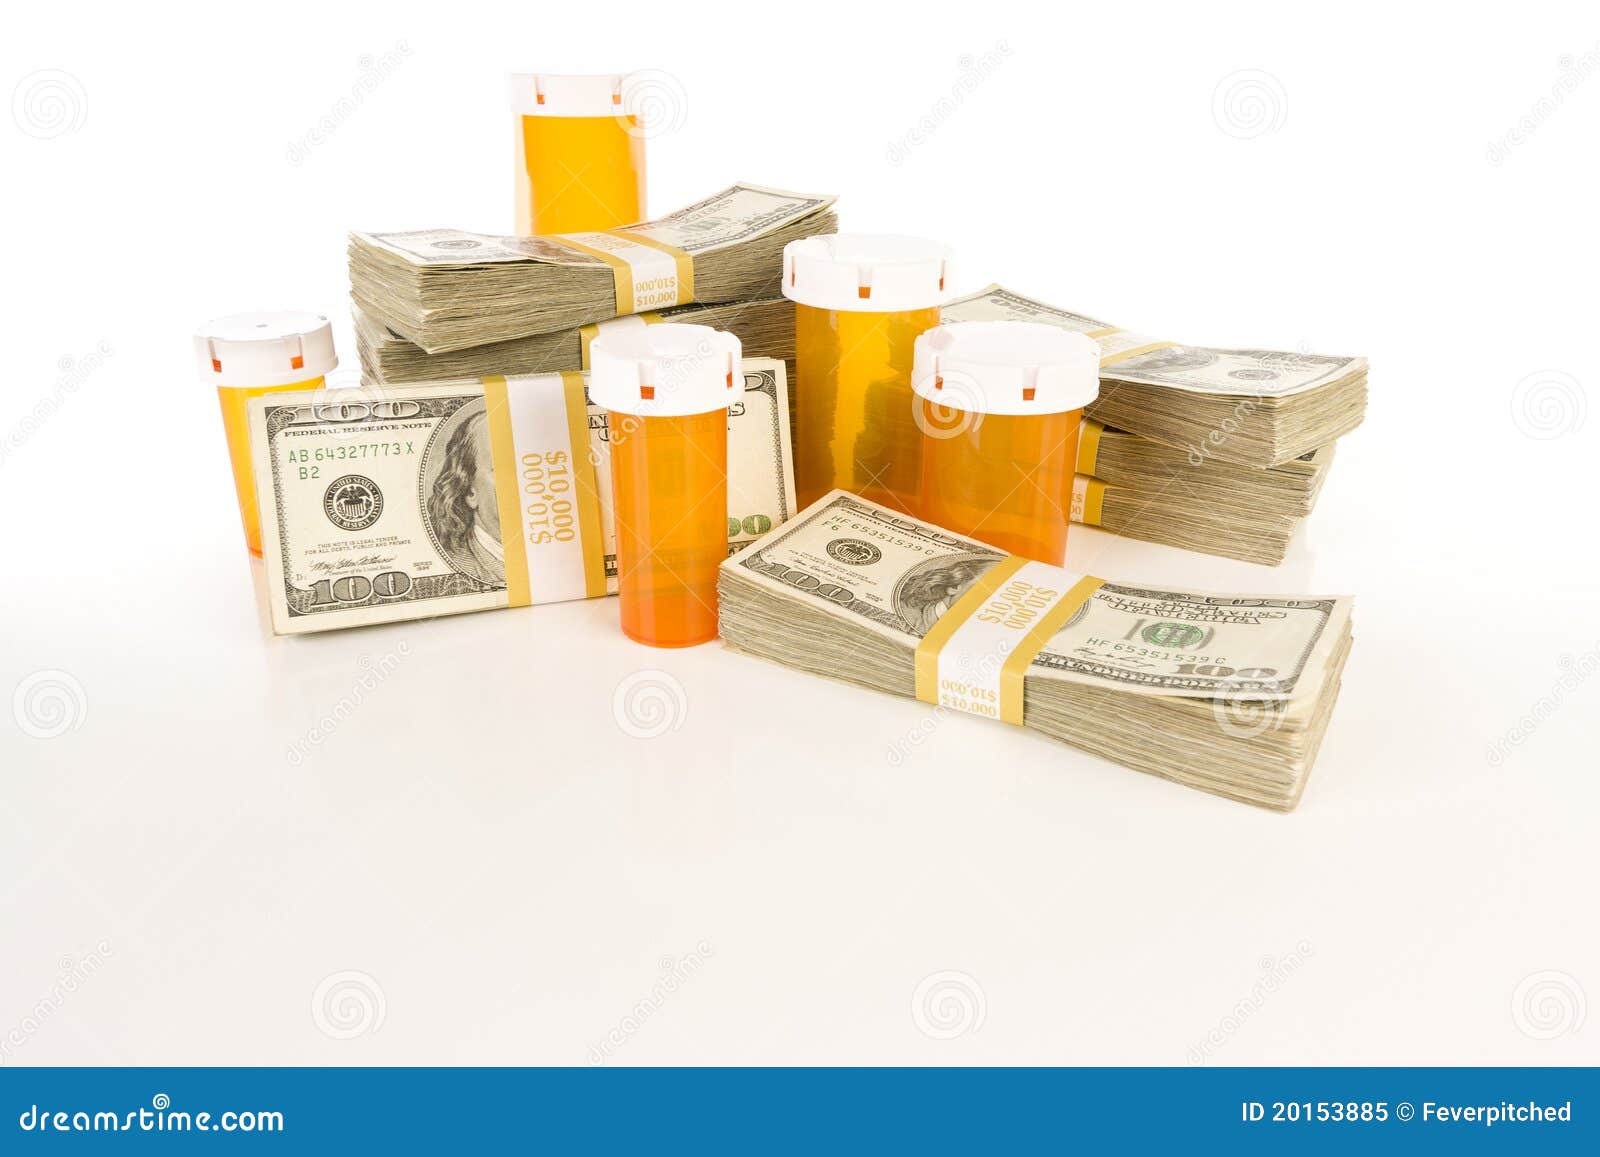 medicine bottles and stacks of hundreds of dollars